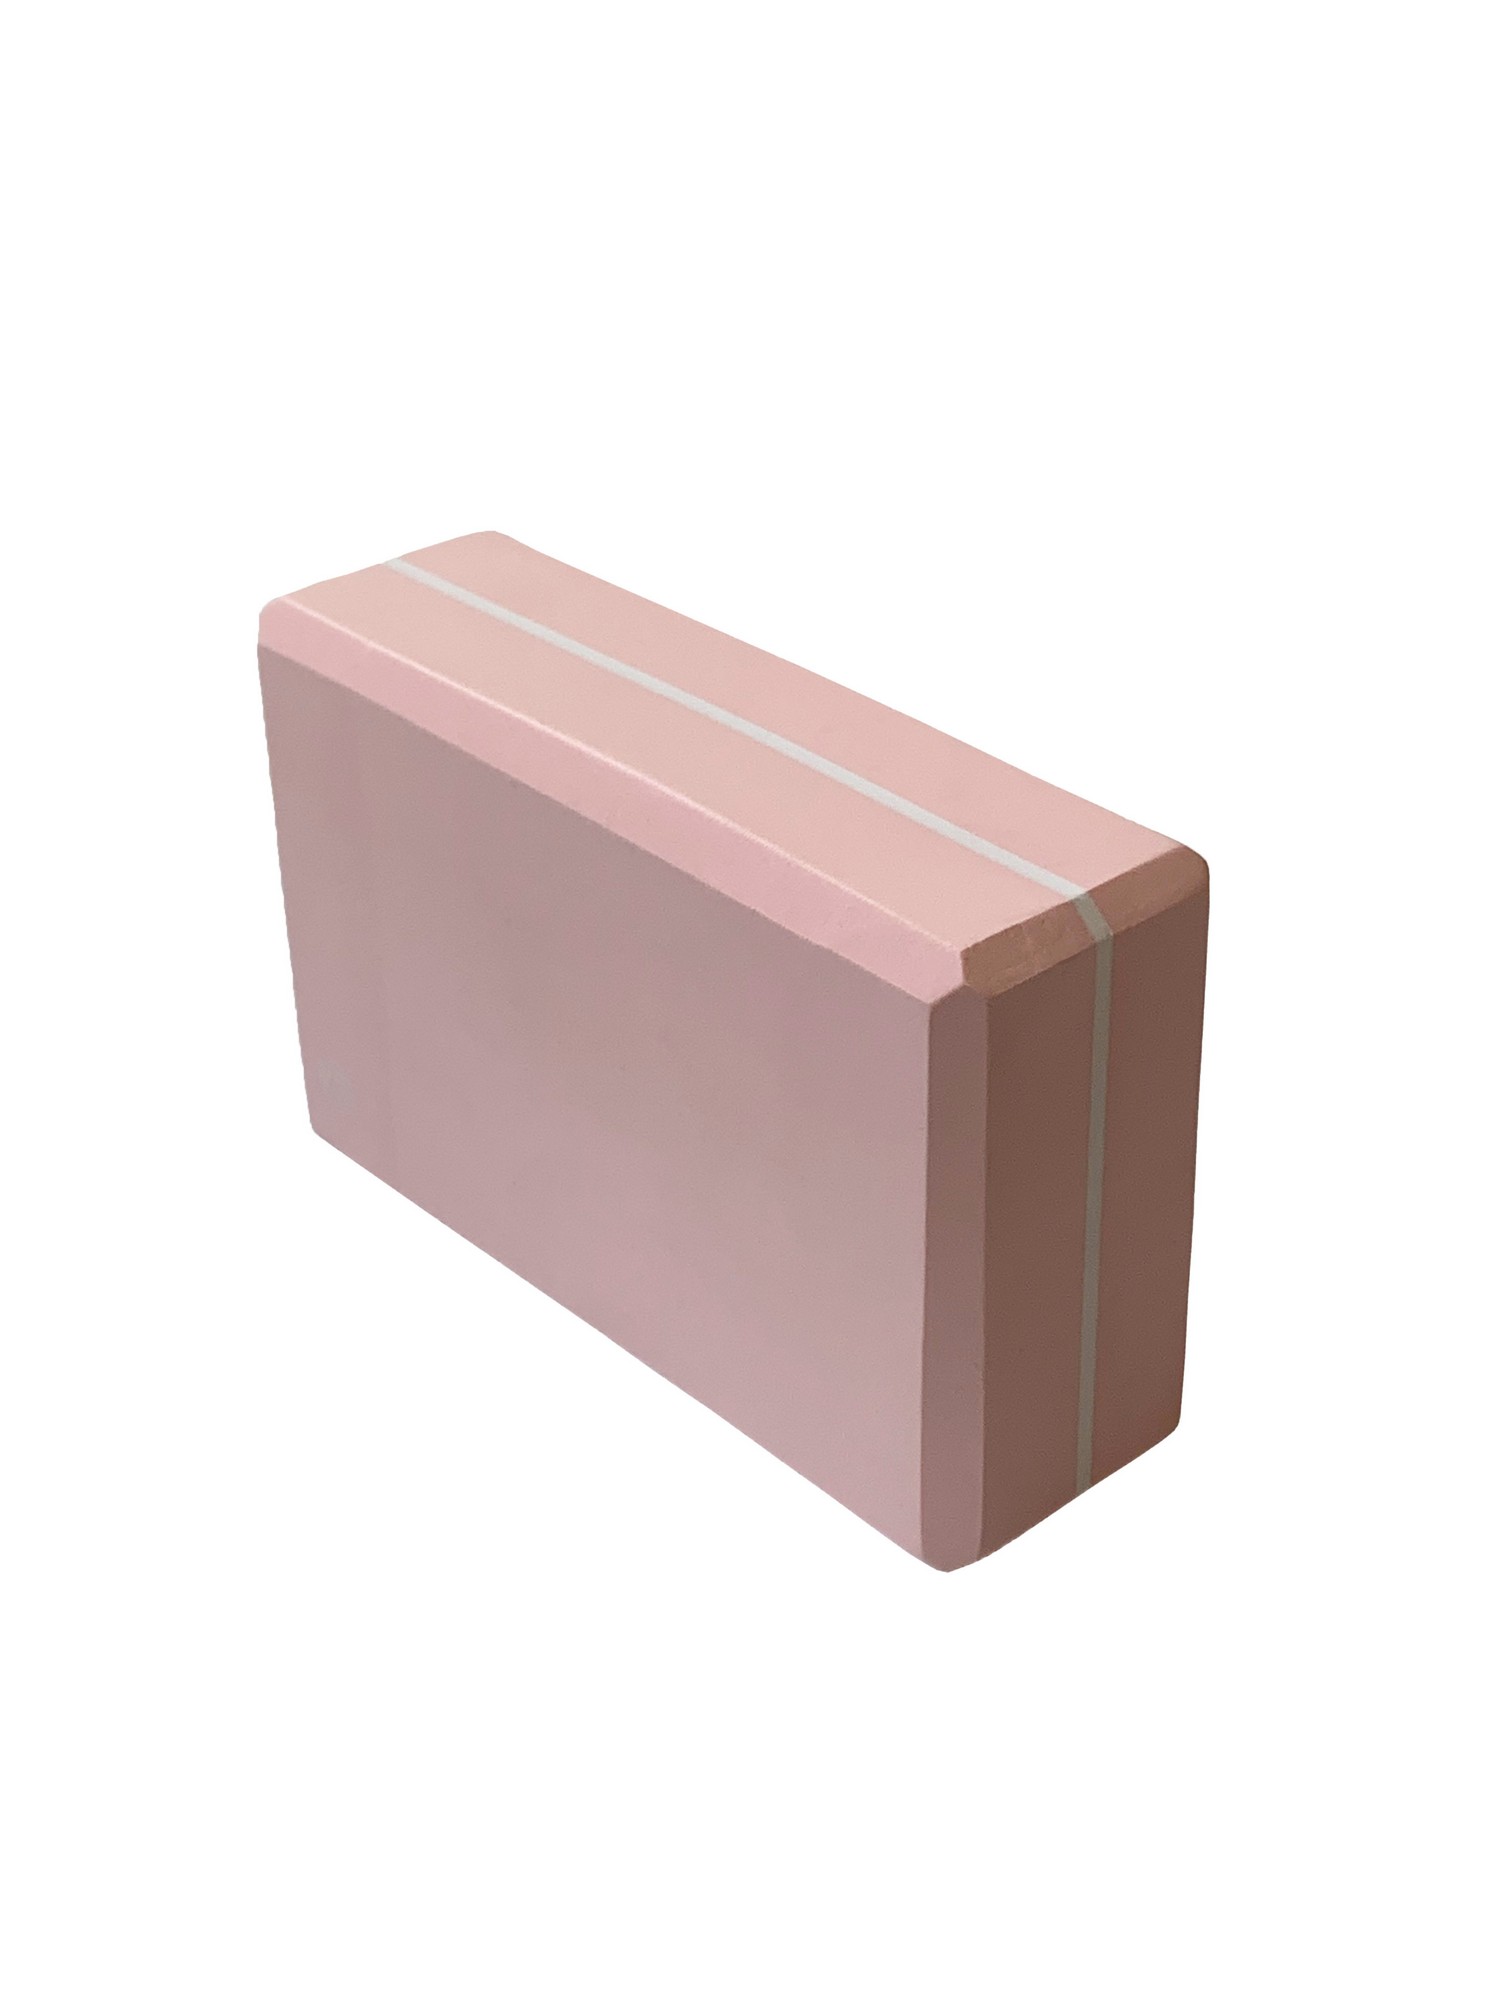 Йога блок Sportex полумягкий, из вспененного ЭВА 22,3х15х7,6 см E39131-40 светло розовый